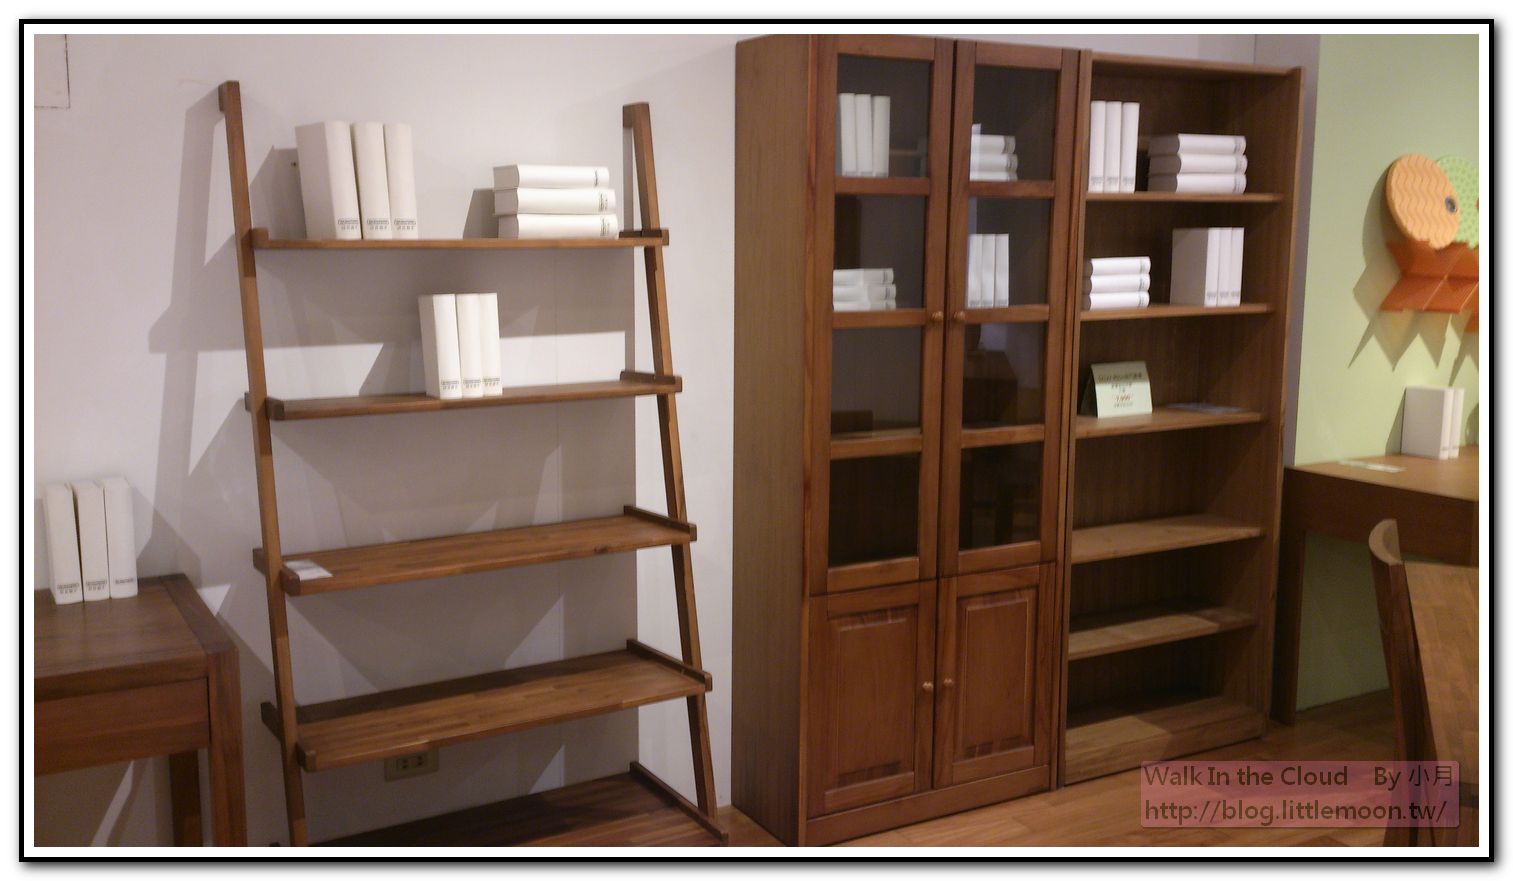 木質書櫃 A型、玻璃門型 (16500元)、無門型